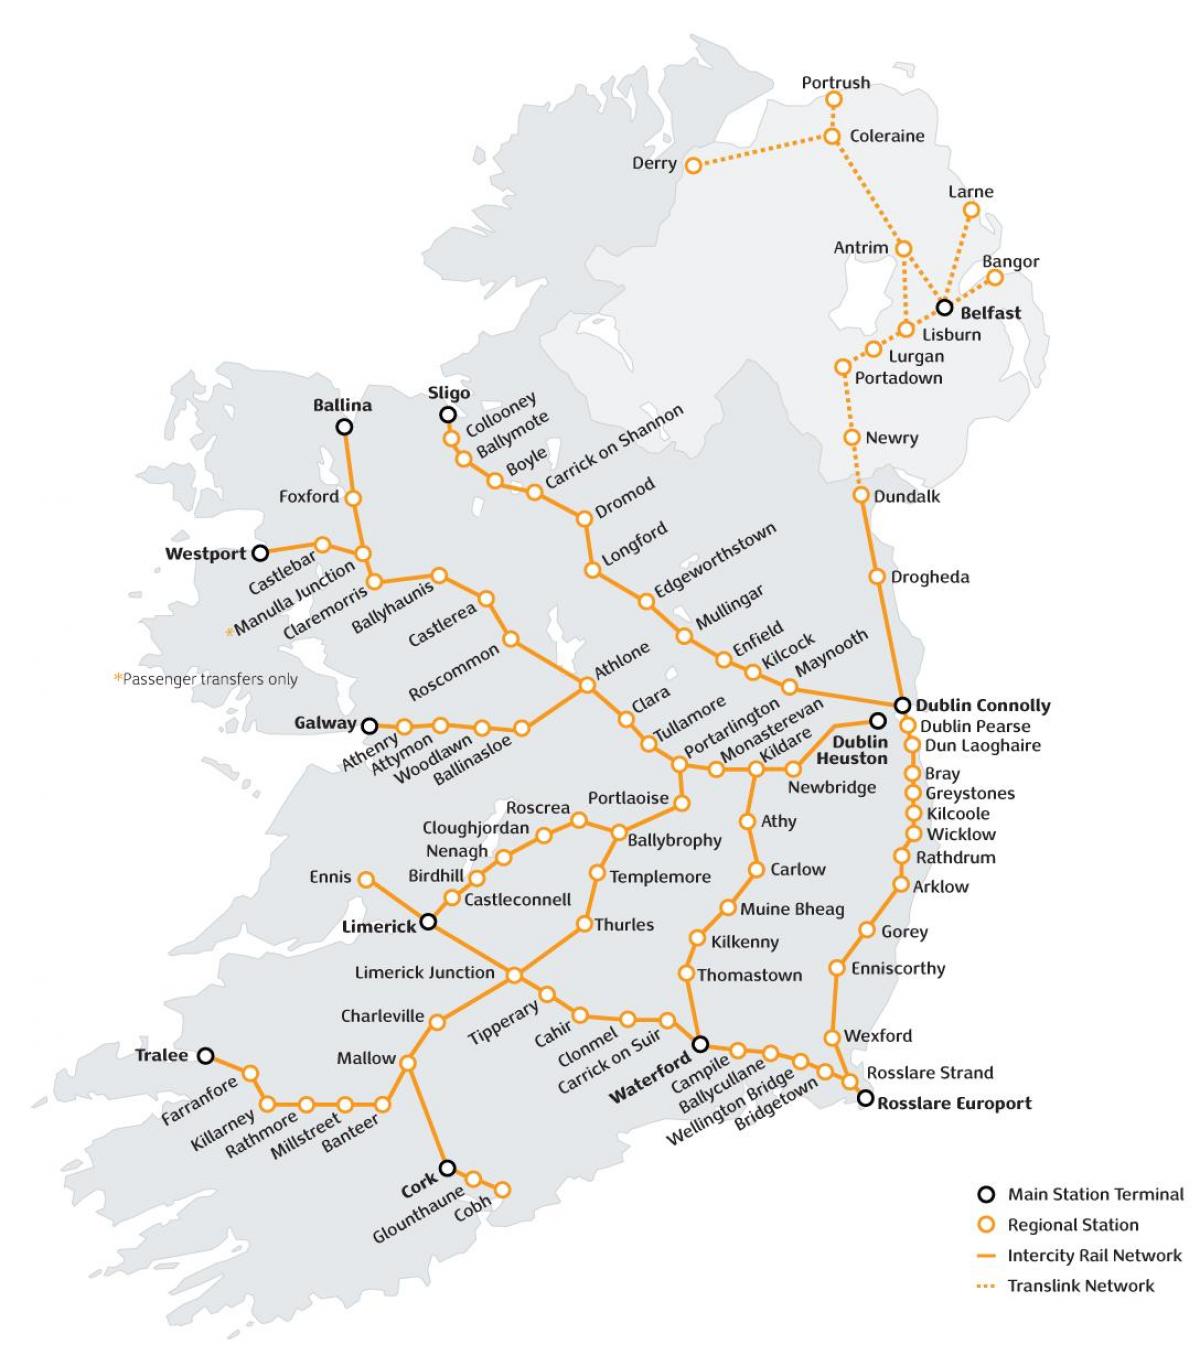 putovanje vlakom u irskoj mapu